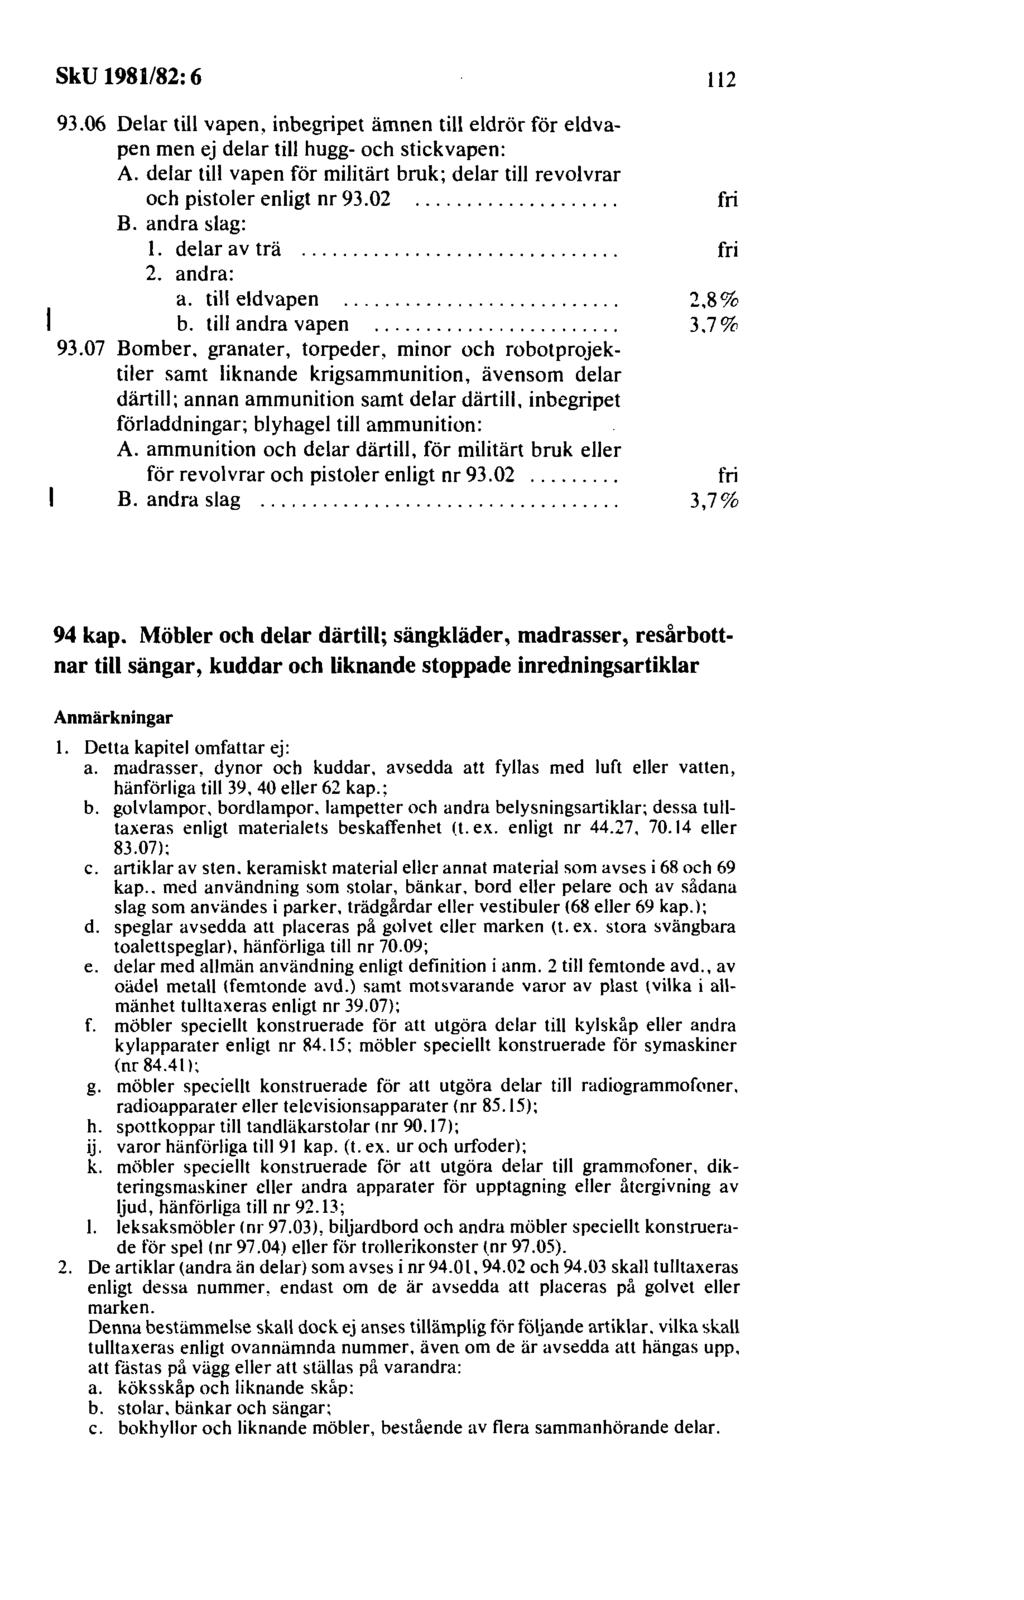 SkU 1981/82: 6. Skatteutskottets betänkande 1981/82: 6. om ändring ...